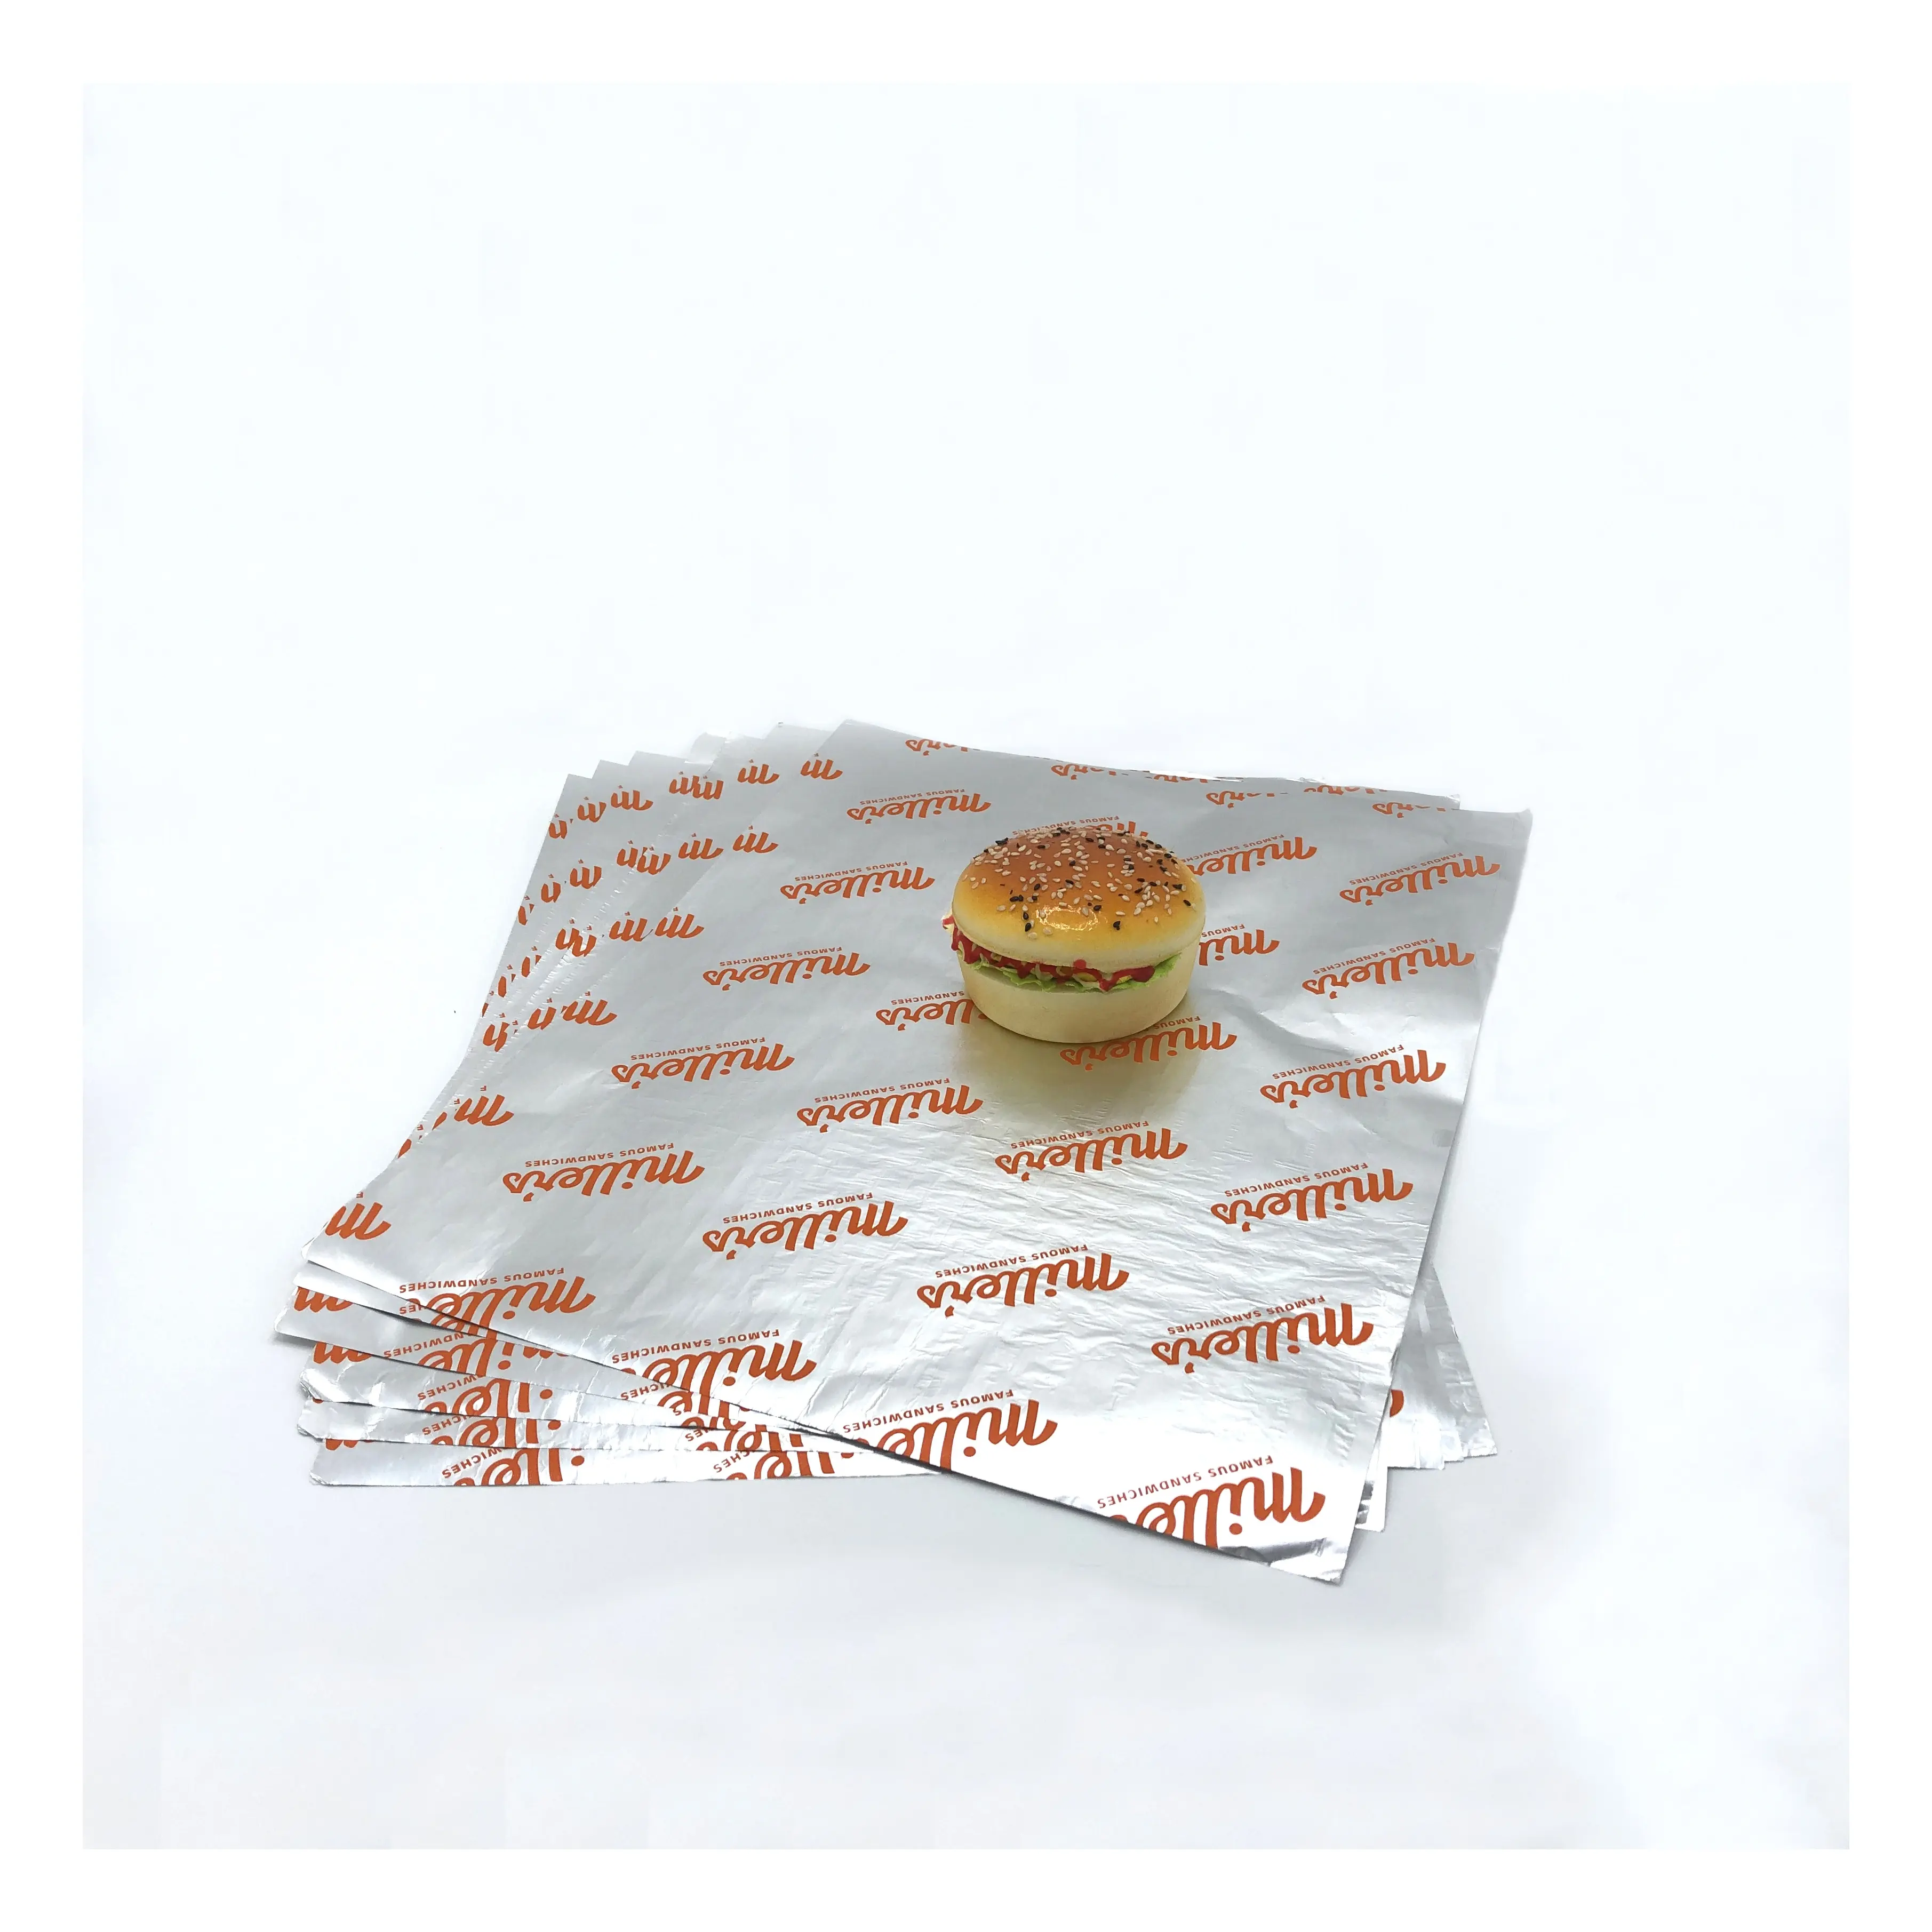 Benutzer definierte Farbe Sandwich Hamburger Brot in Lebensmittel qualität Silber Aluminium folie beschichtetes Wachspapier für Fast Food Burger Sandwich Wrap